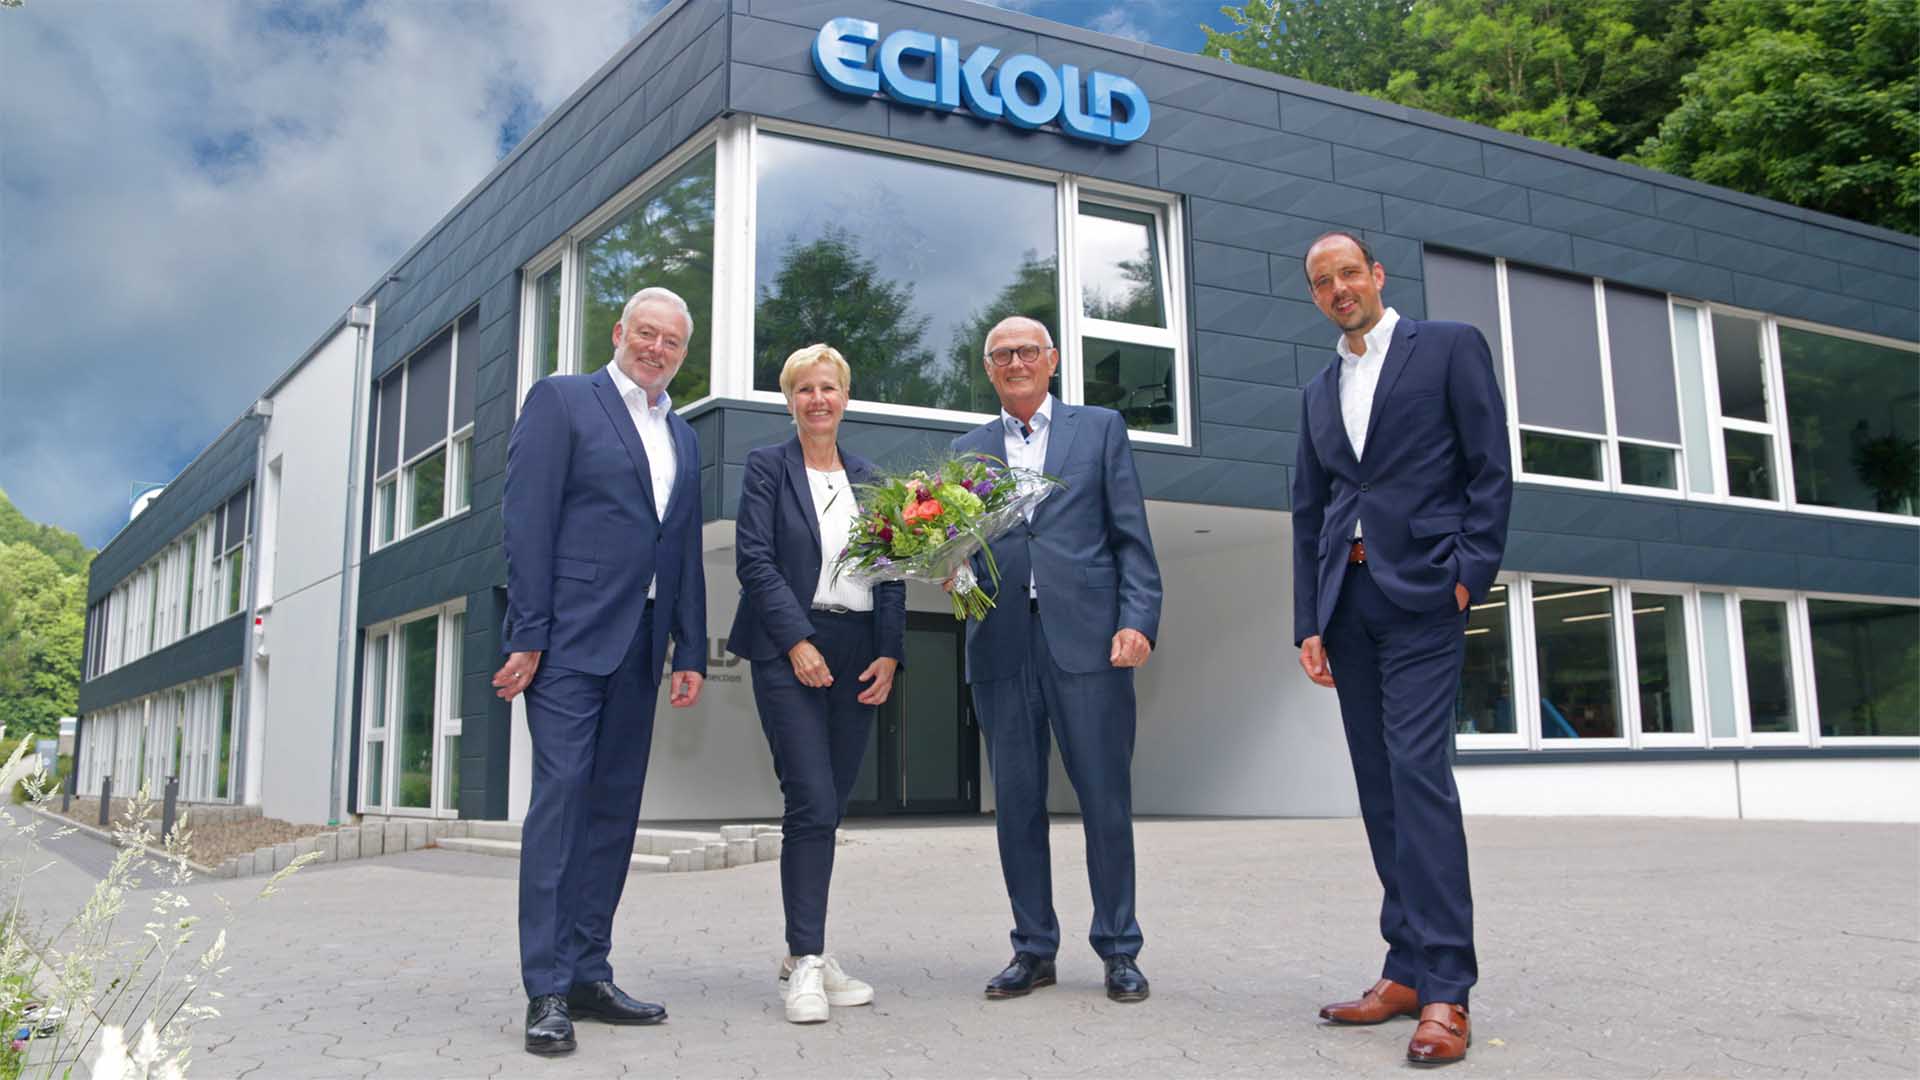 ECKOLD Geschäftsführung Ralf Pilgrim, Annegret Eckold, Patric Daske zusammen mit Dr. R. Beyer 